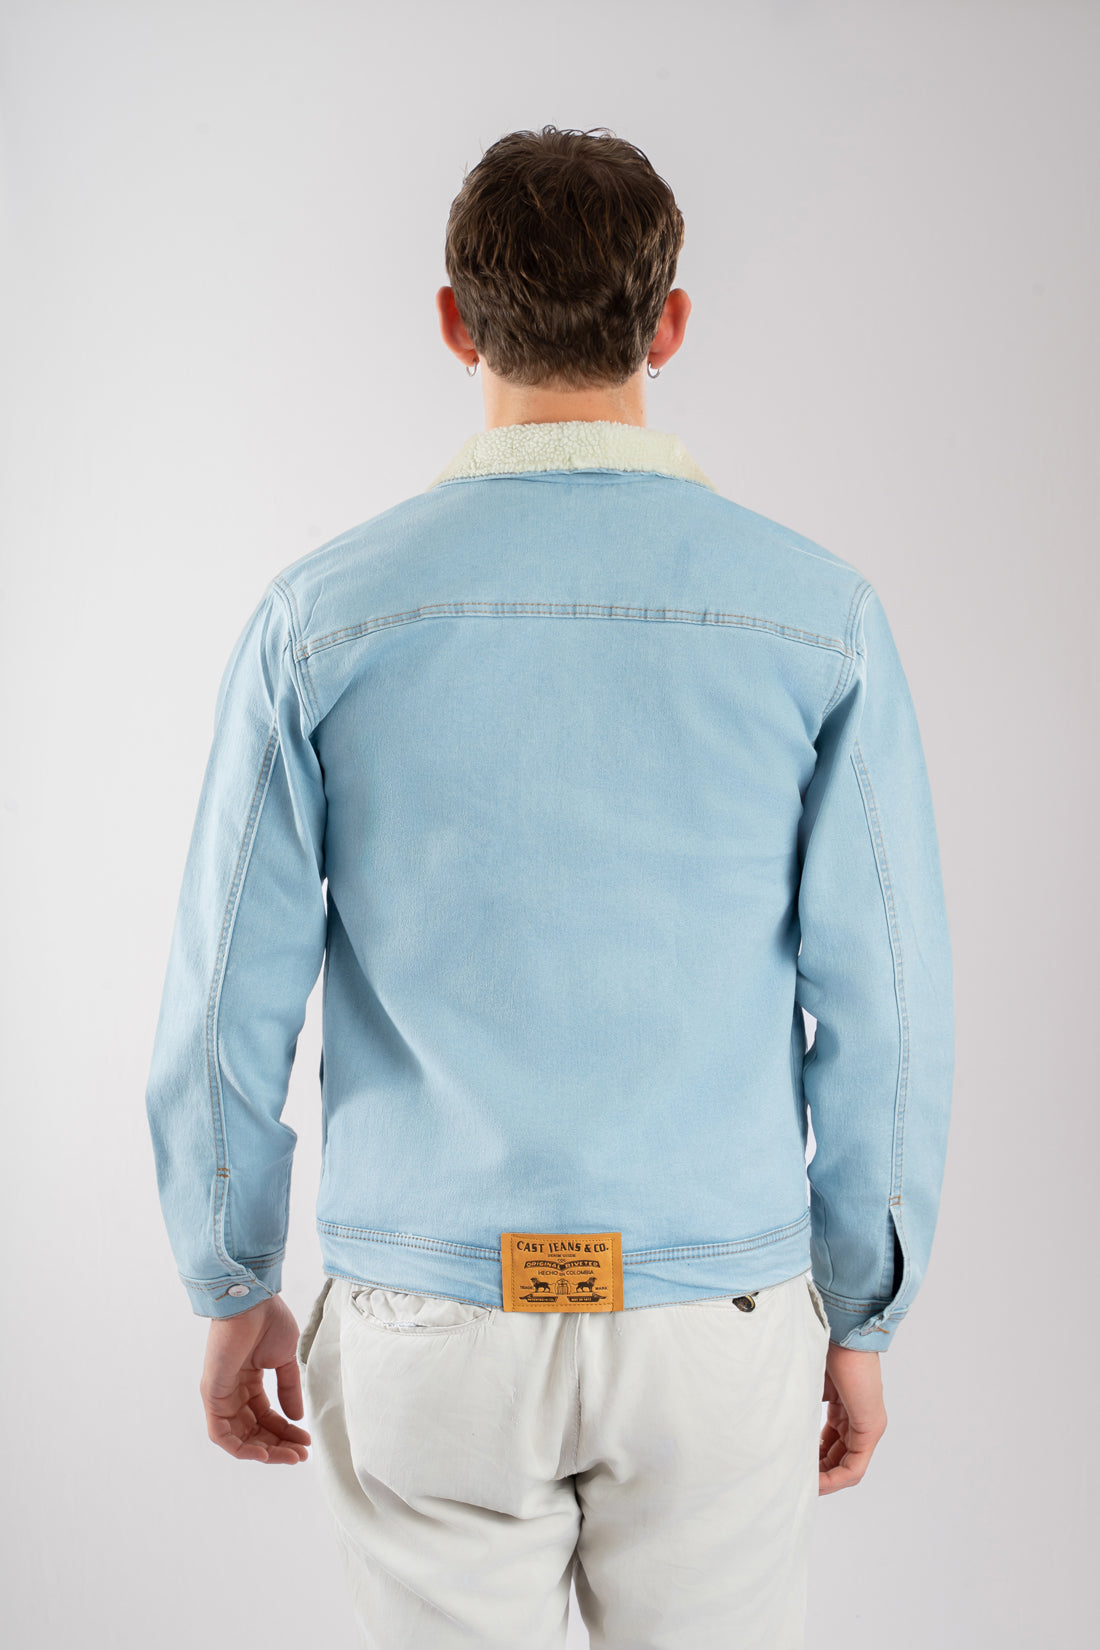 Chaqueta de jean azul hielo con ovejero vista de espalda